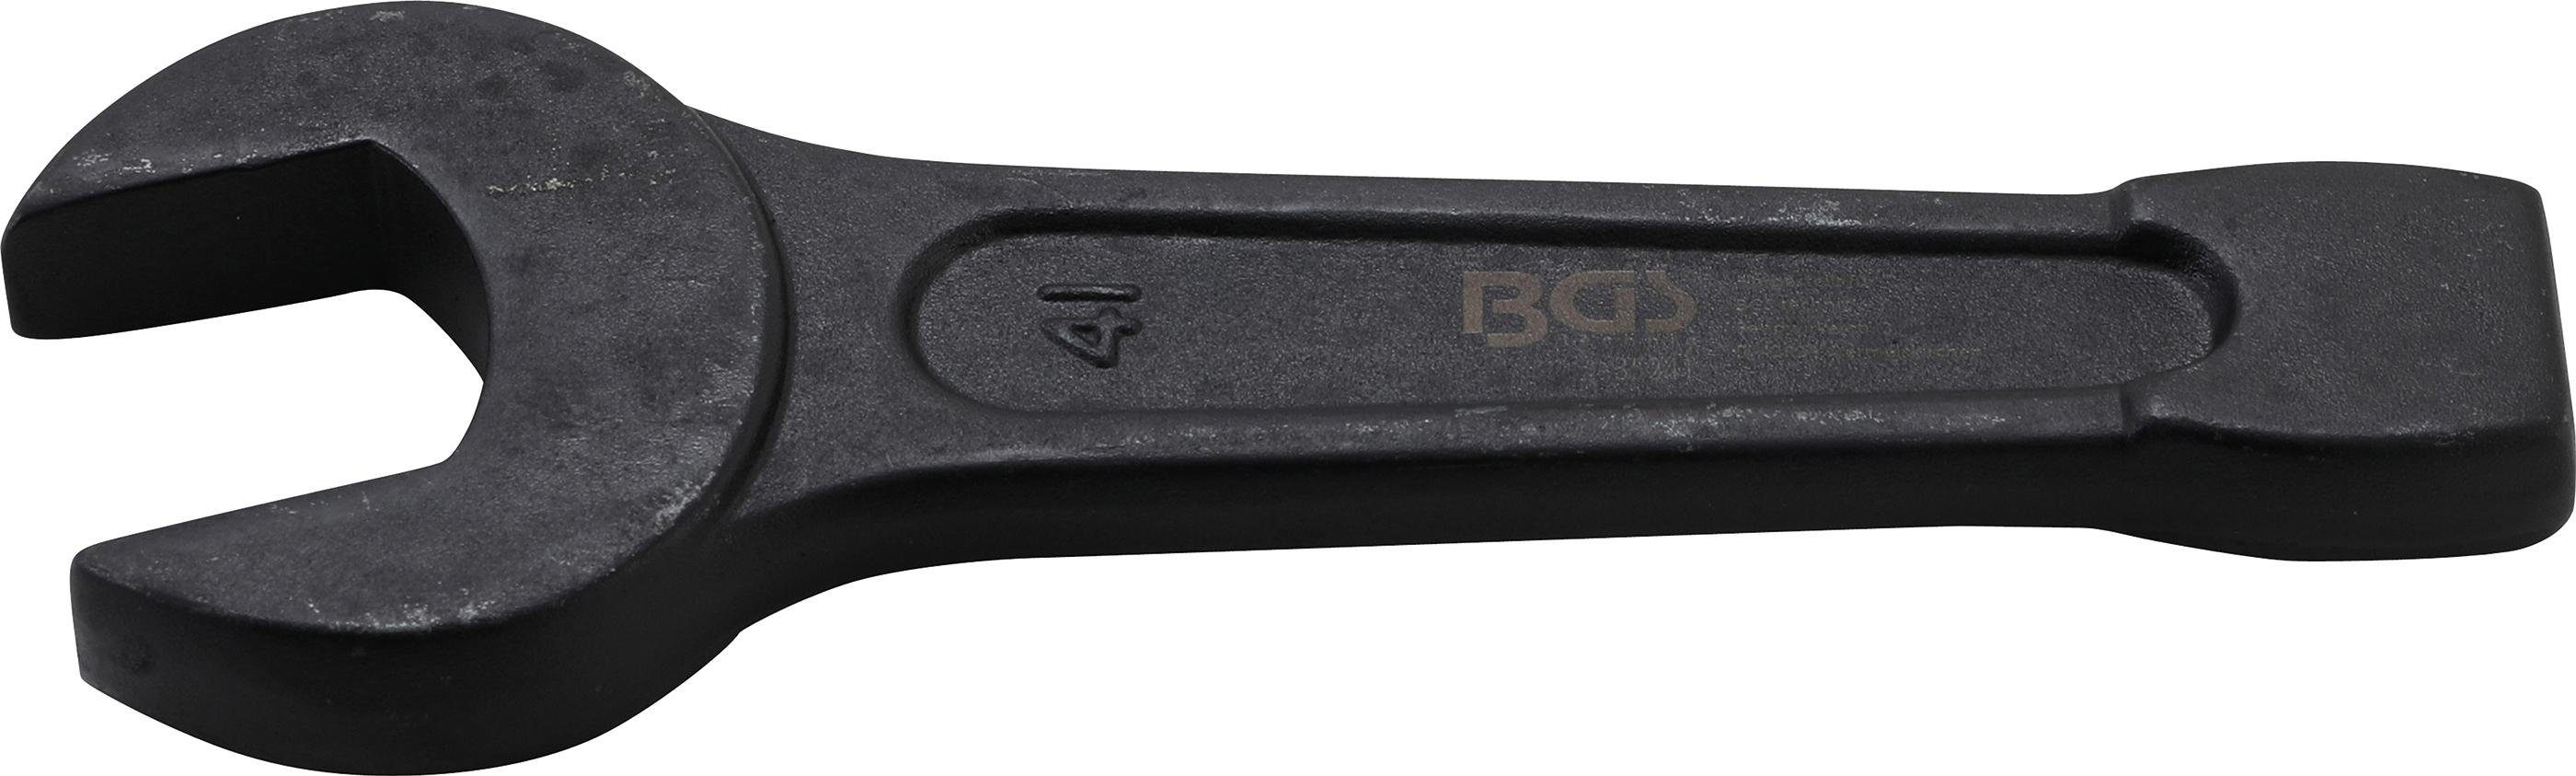 BGS technic Maulschlüssel Schlag-Maulschlüssel, SW 41 mm